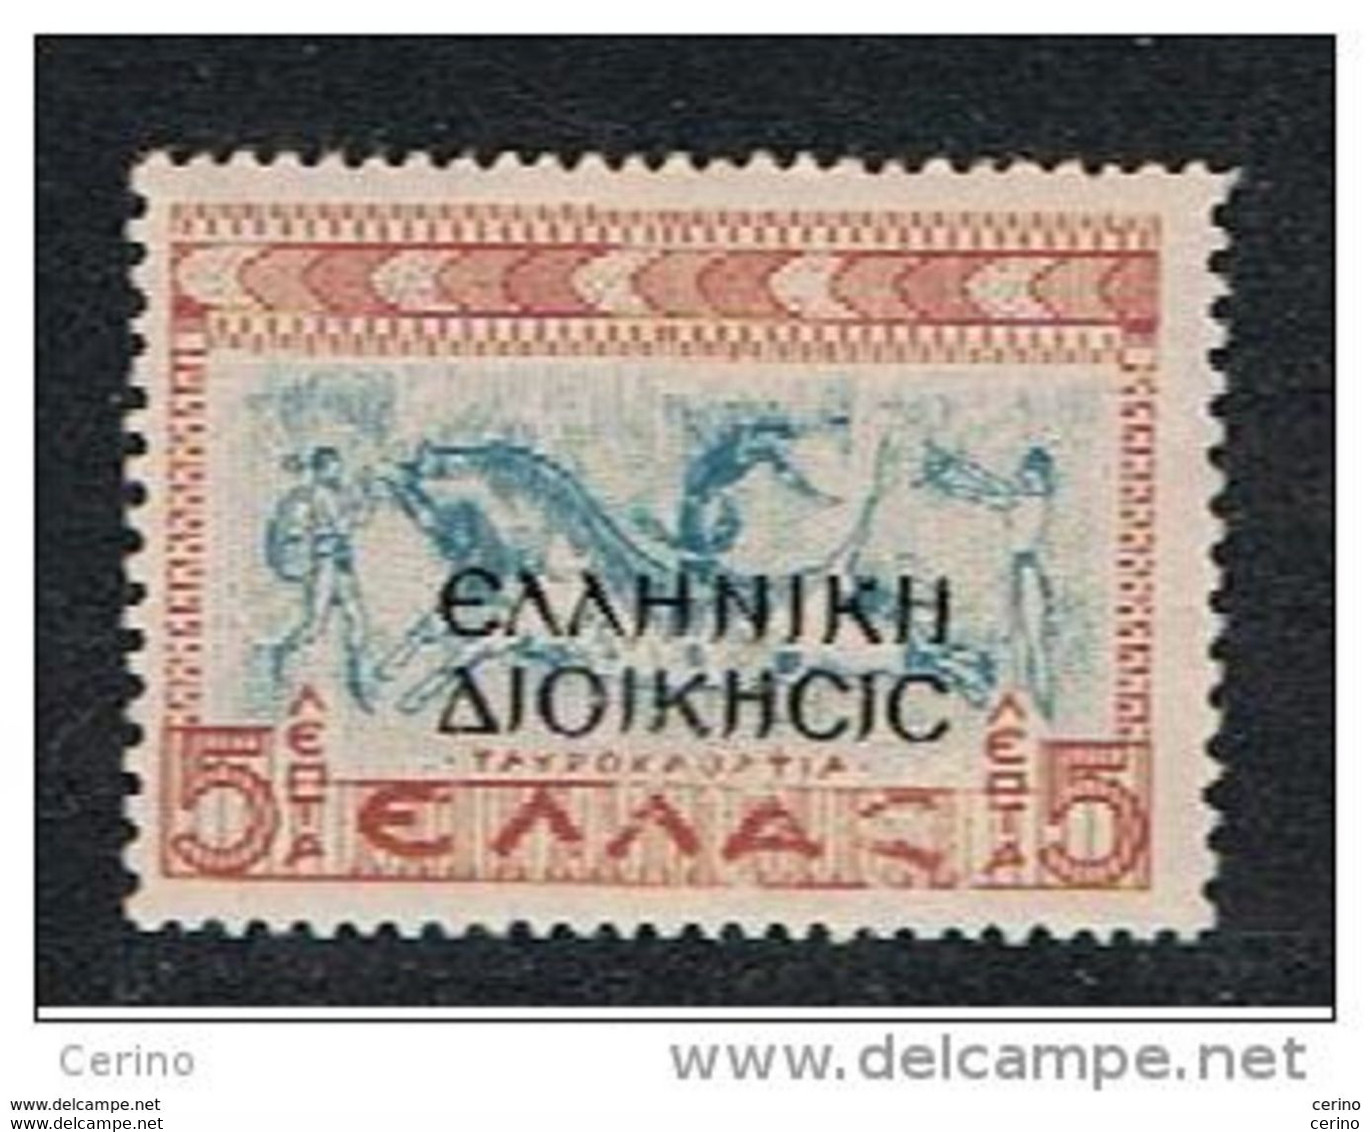 ALBANIA:  1940  OCCUPAZIONE  GRECA  -  SOPRASTAMPATO  -  £. 5  ROSSO  BRUNO  E  AZZURRO  N. -  SASS. 1 - Occup. Greca: Albania